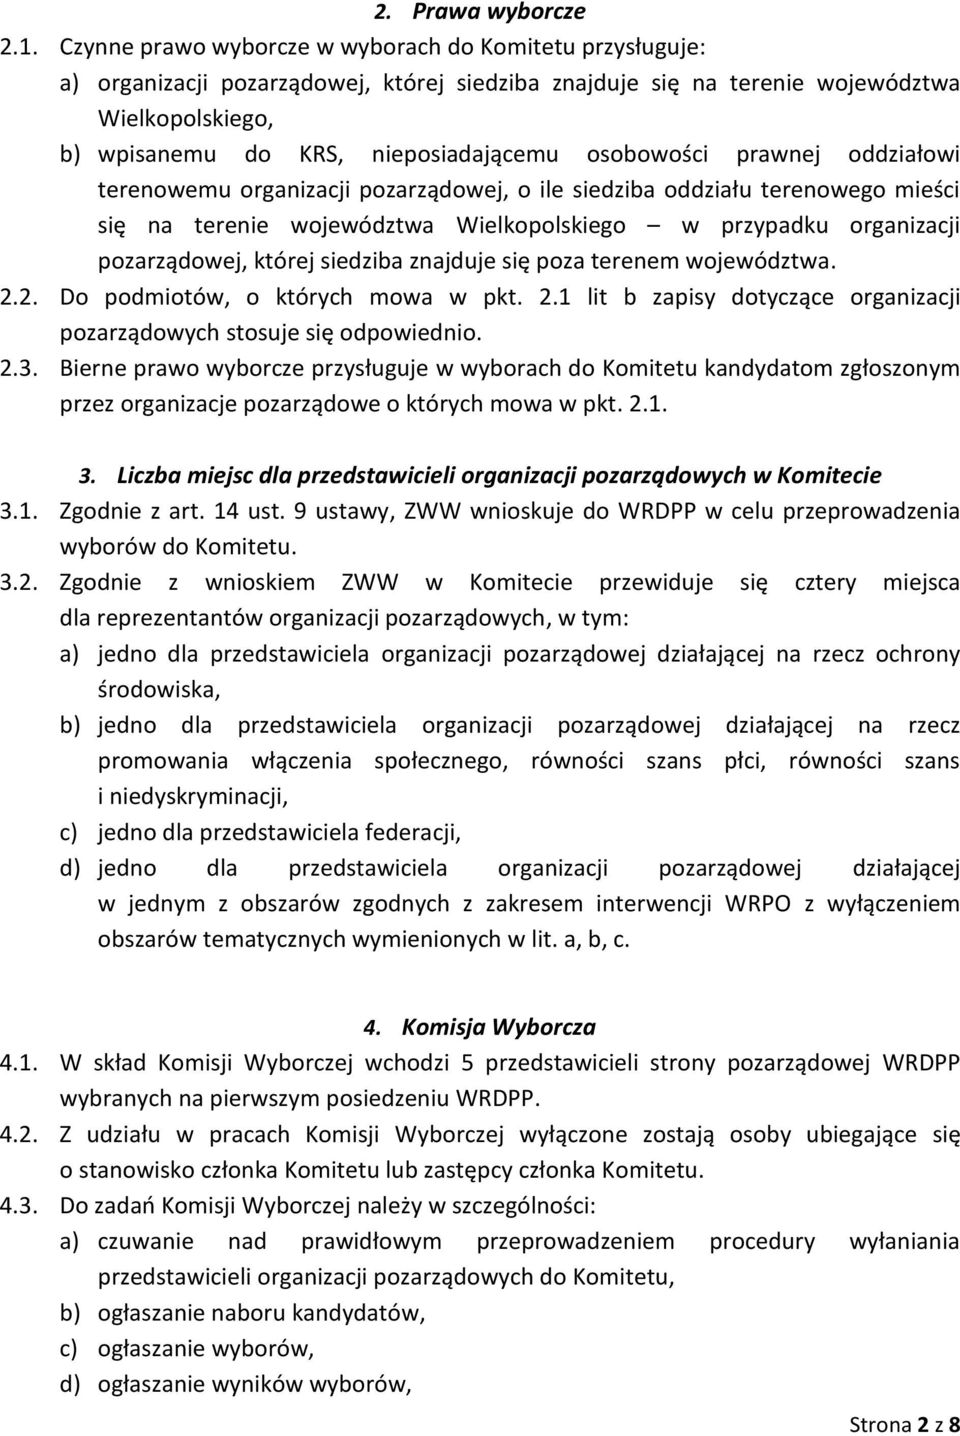 osobowości prawnej oddziałowi terenowemu organizacji pozarządowej, o ile siedziba oddziału terenowego mieści się na terenie województwa Wielkopolskiego w przypadku organizacji pozarządowej, której